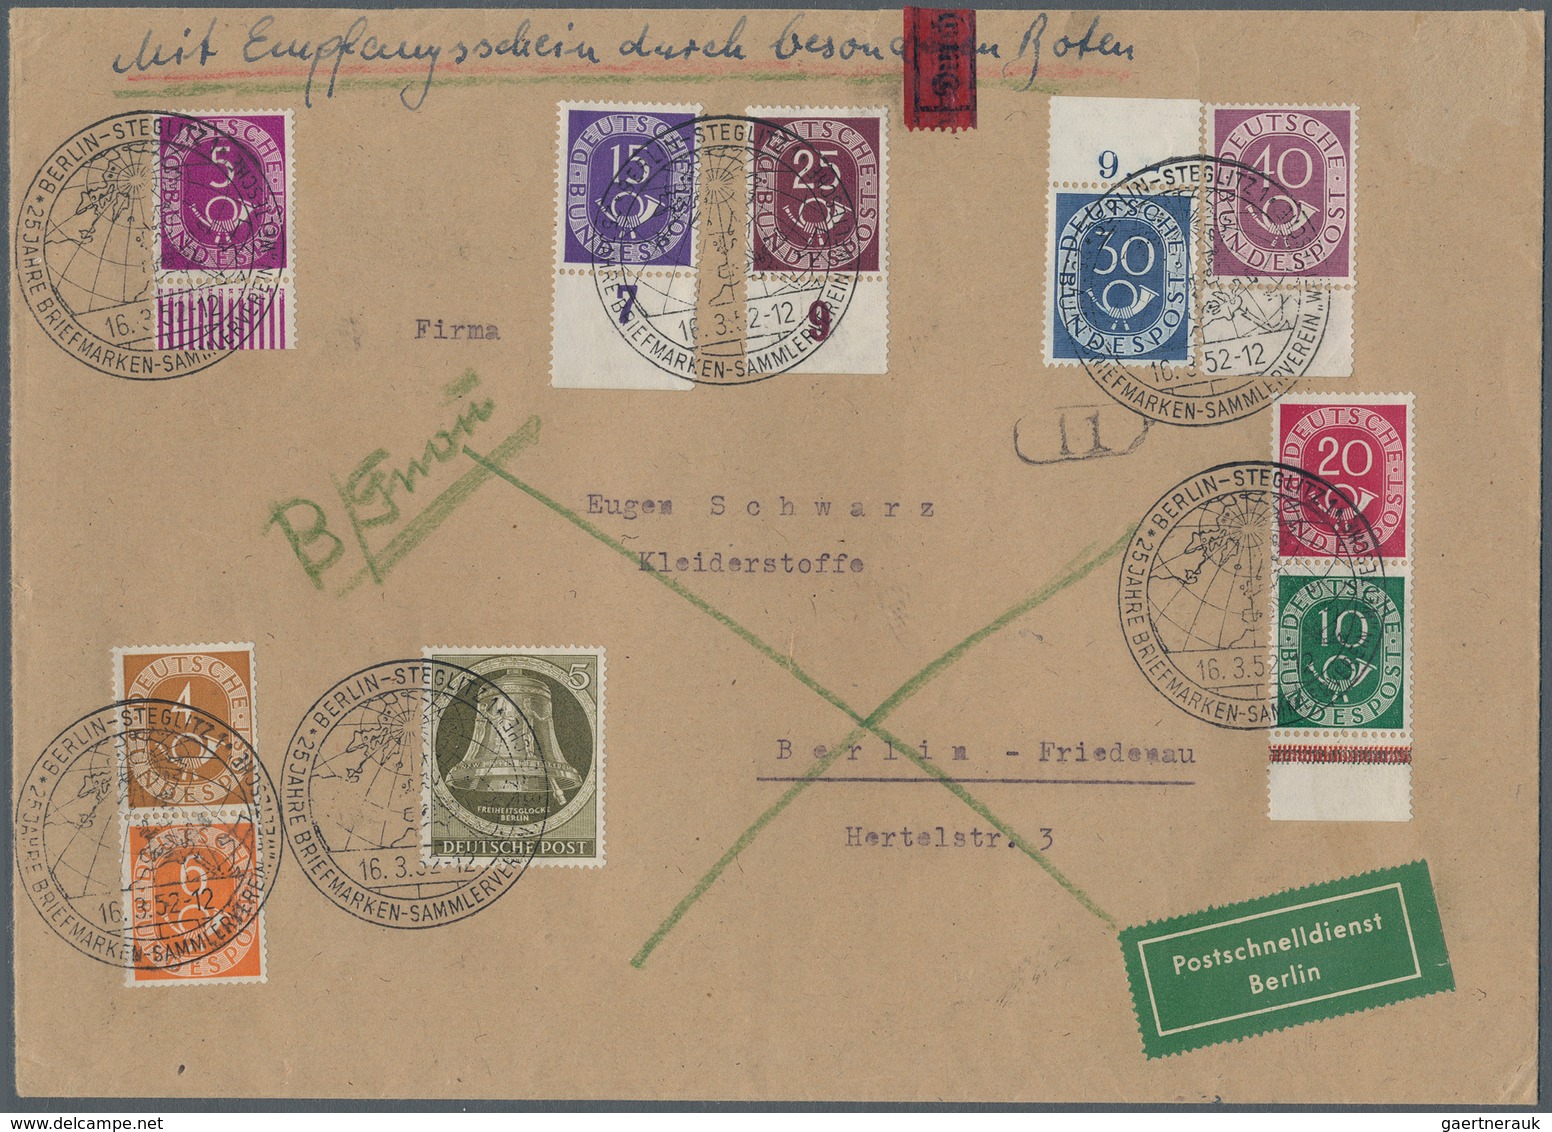 Berlin - Postschnelldienst: 5 Pf. Glocke Rechts U. Bund Angegebene Posthornwerte (vom Bogenrand) Zus - Storia Postale